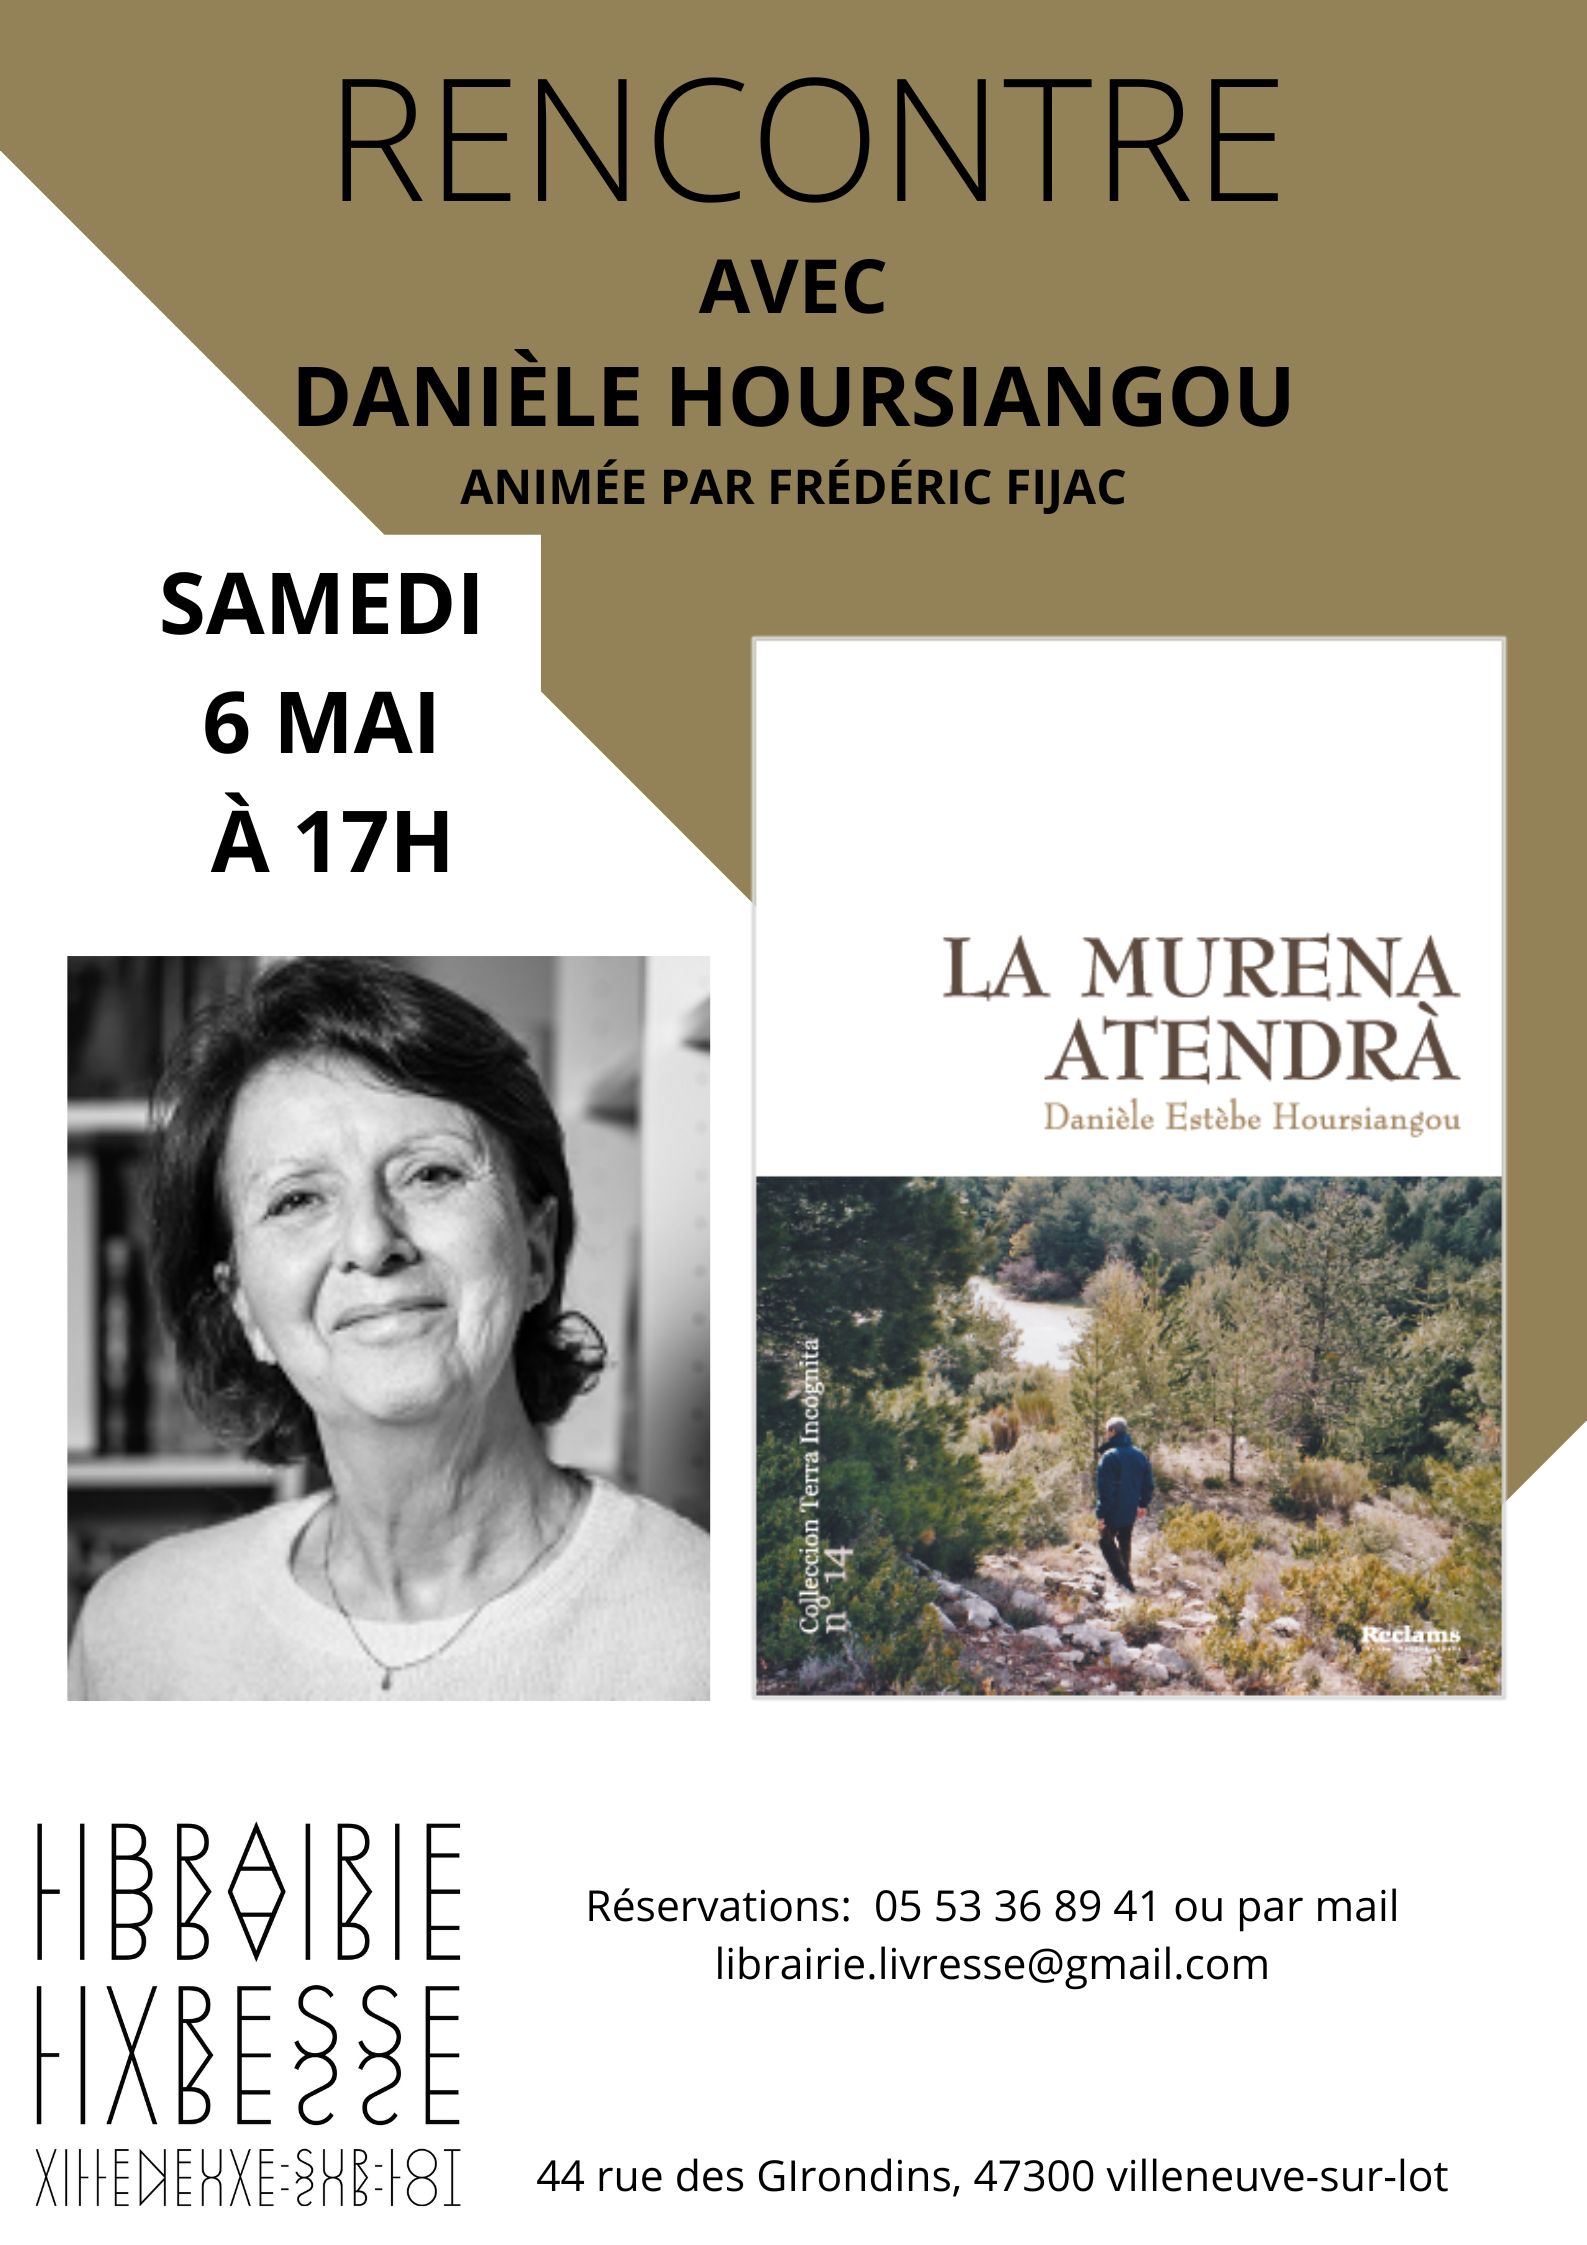 Rencontre avec Danièle Hoursiangou